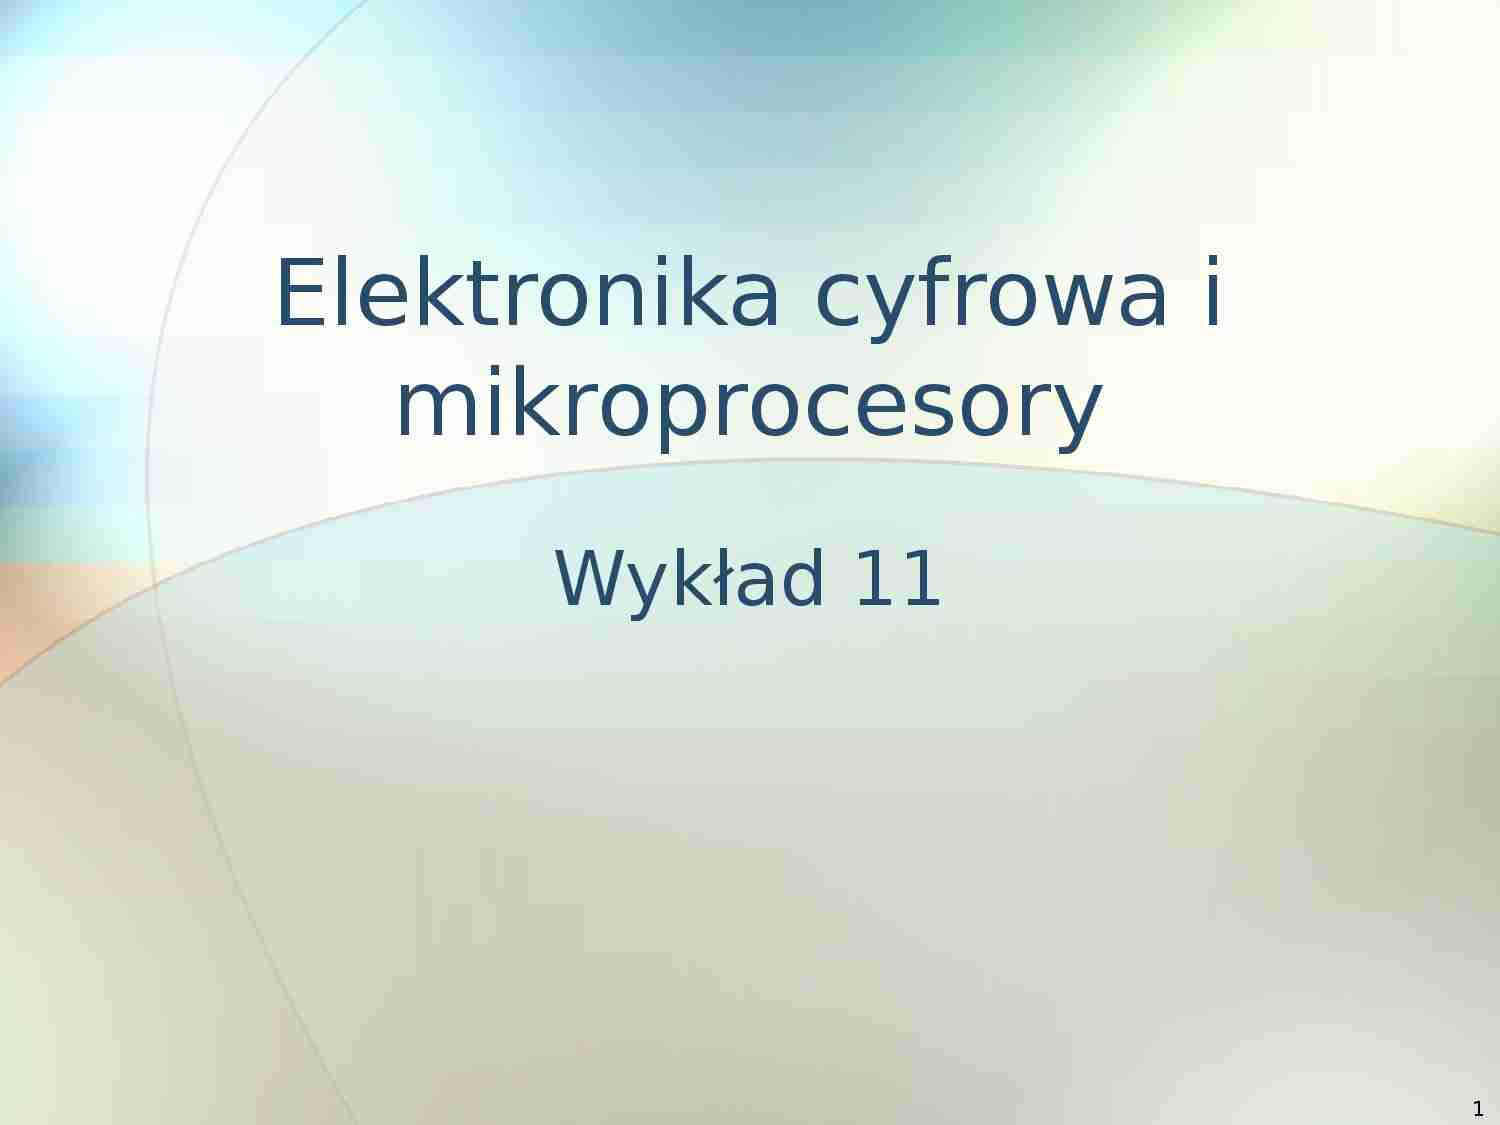 Eektronika cyfrowa i mikroprocesory - wykład 11 - strona 1